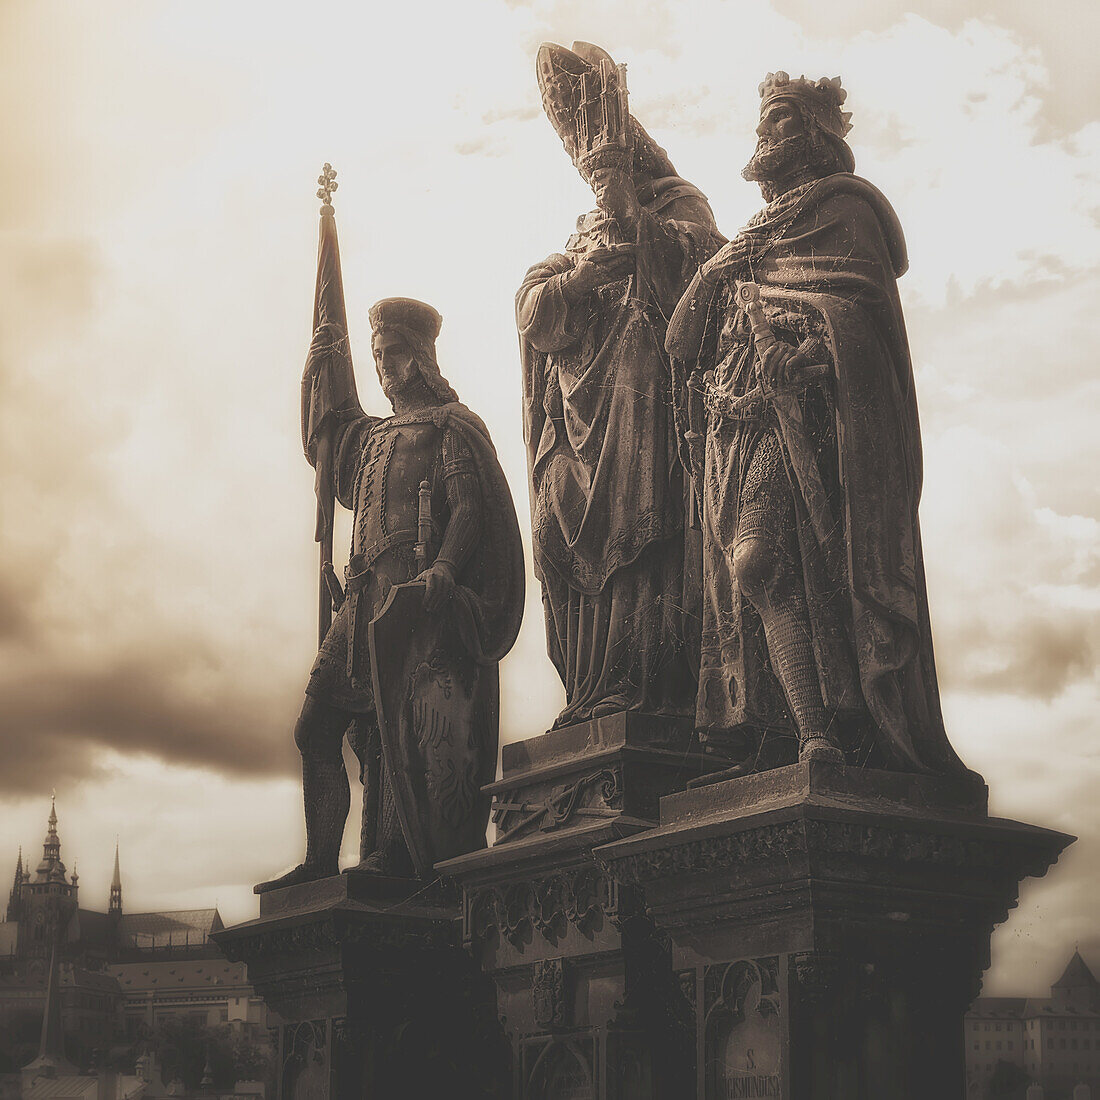 Statuen entlang der Karlsbrücke; Prag, Tschechische Republik